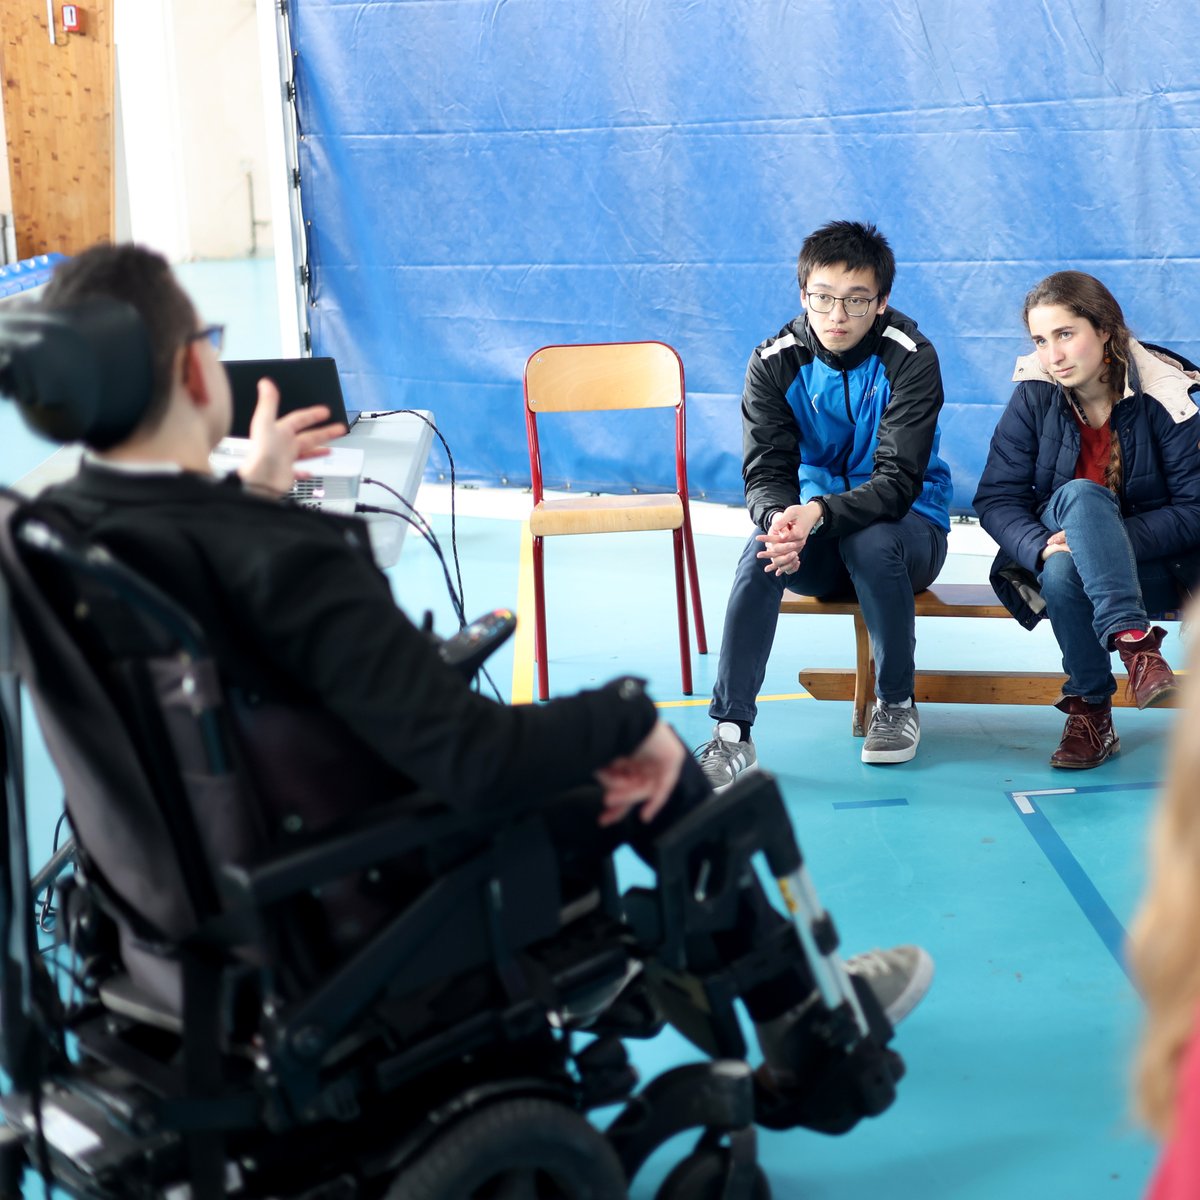 Le 10 avril, un après-midi de sensibilisation aux handicaps s’est déroulée à l’ENSTA Bretagne à destination des élèves ingénieurs de première année. L'objectif : partager des valeurs d’inclusion sociale et professionnelle. 👉 Article : bit.ly/3JmeR47